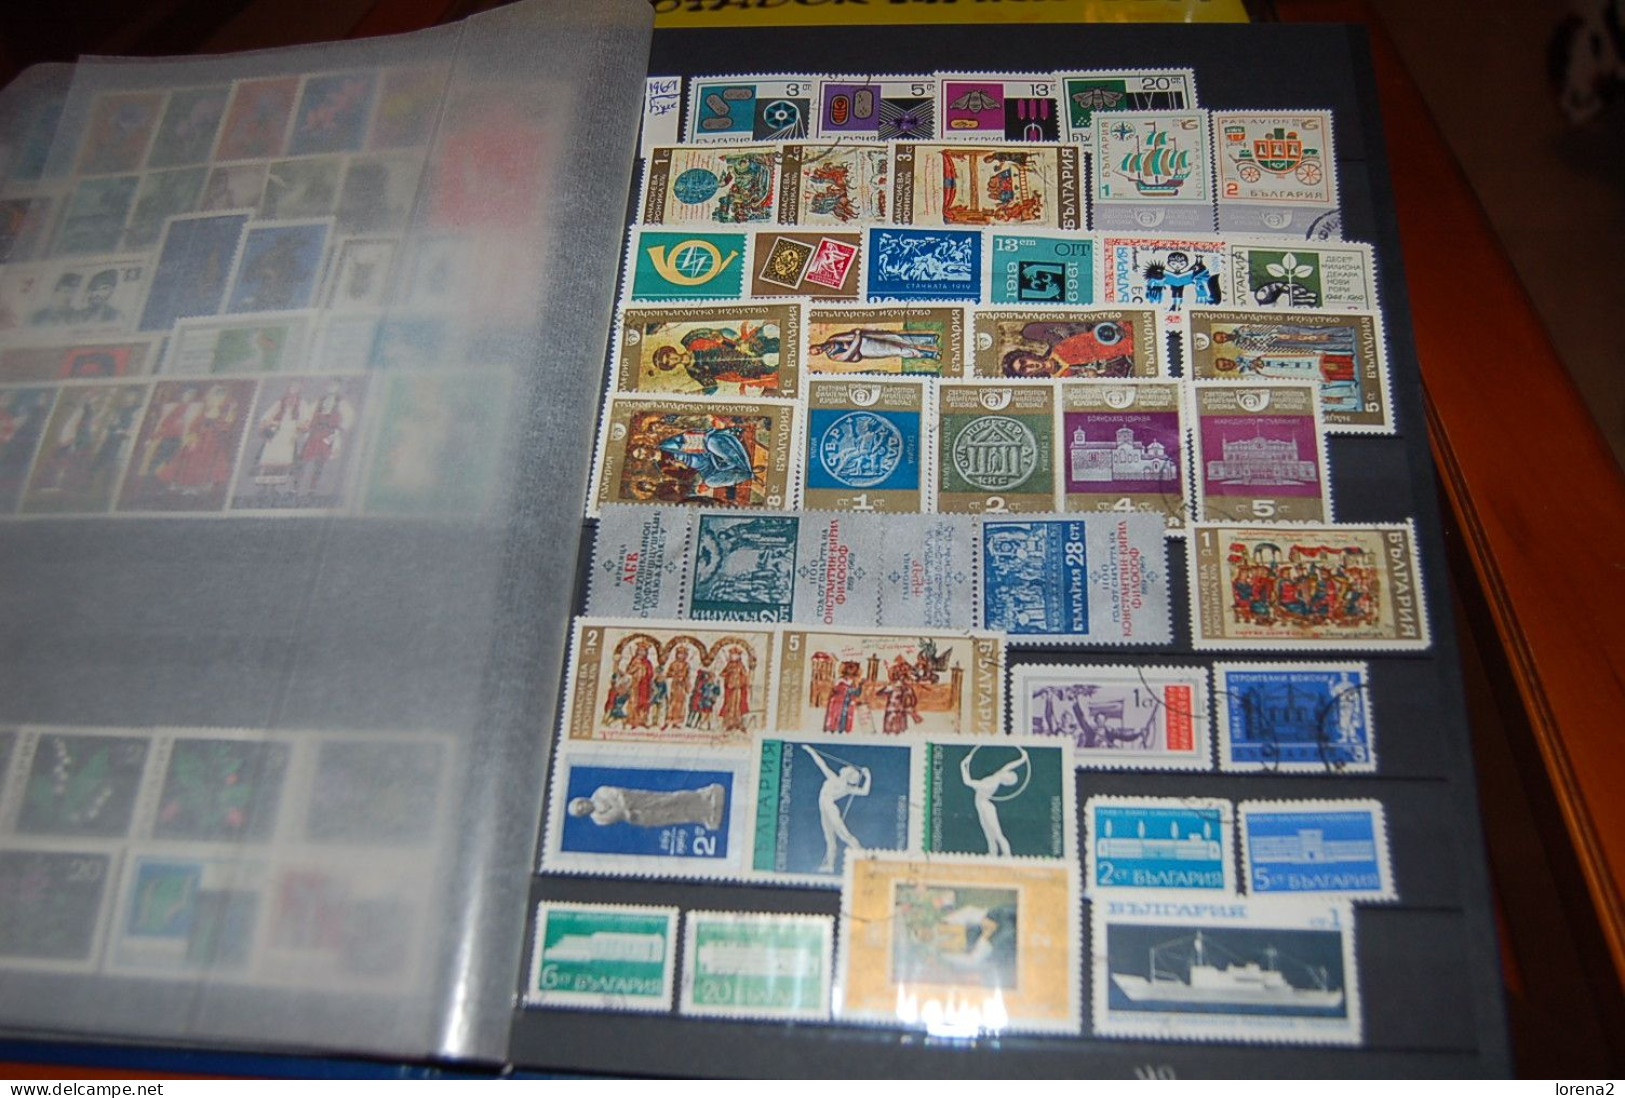 Colección Sellos usados Bulgaria. de 1882 al 2000. 1189 sellos. colec-38